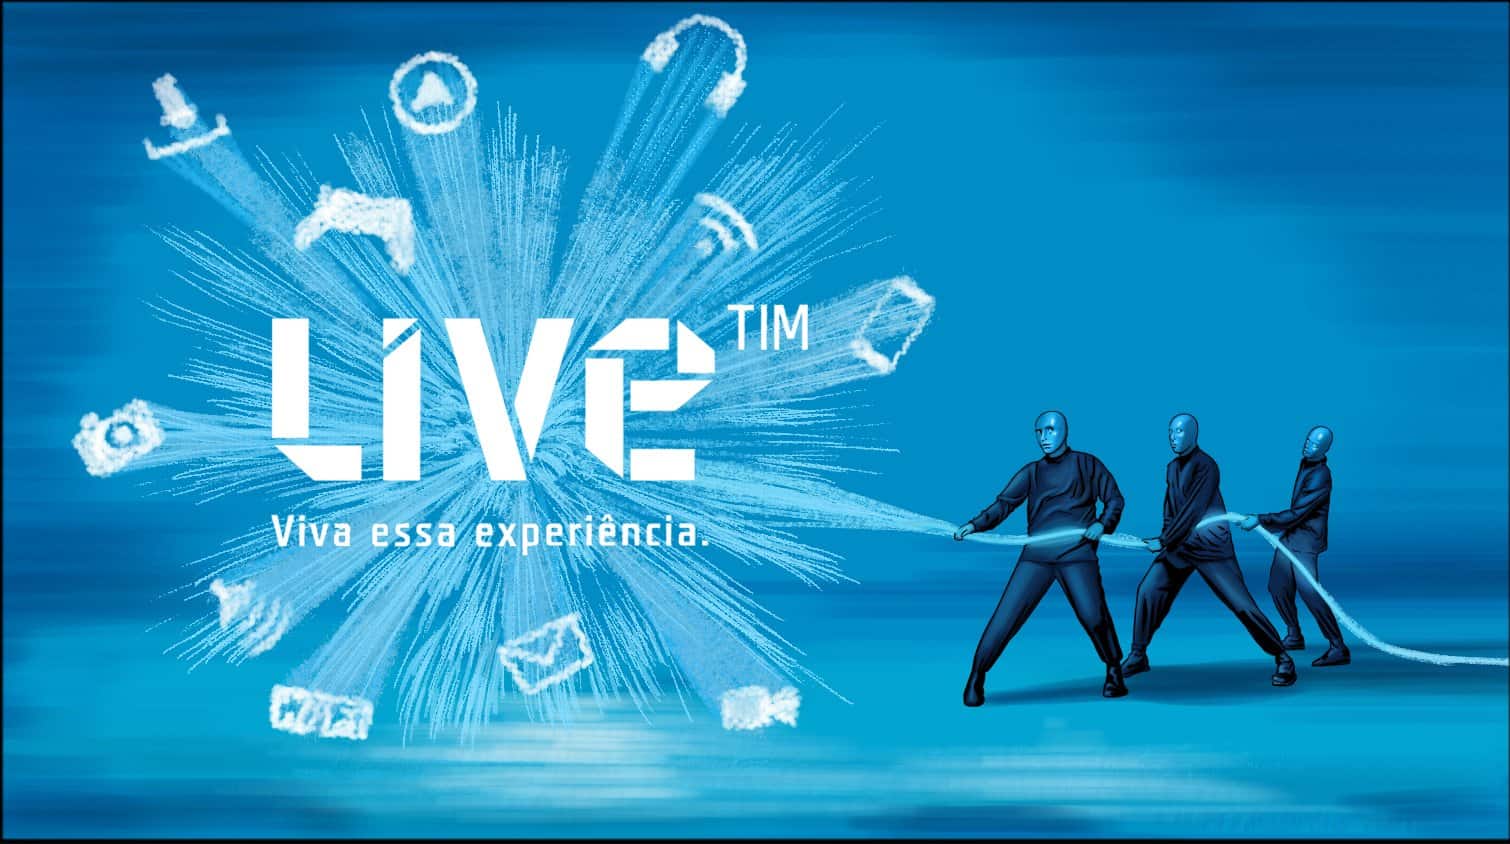 TIM Live, TIM Live 200 Mega